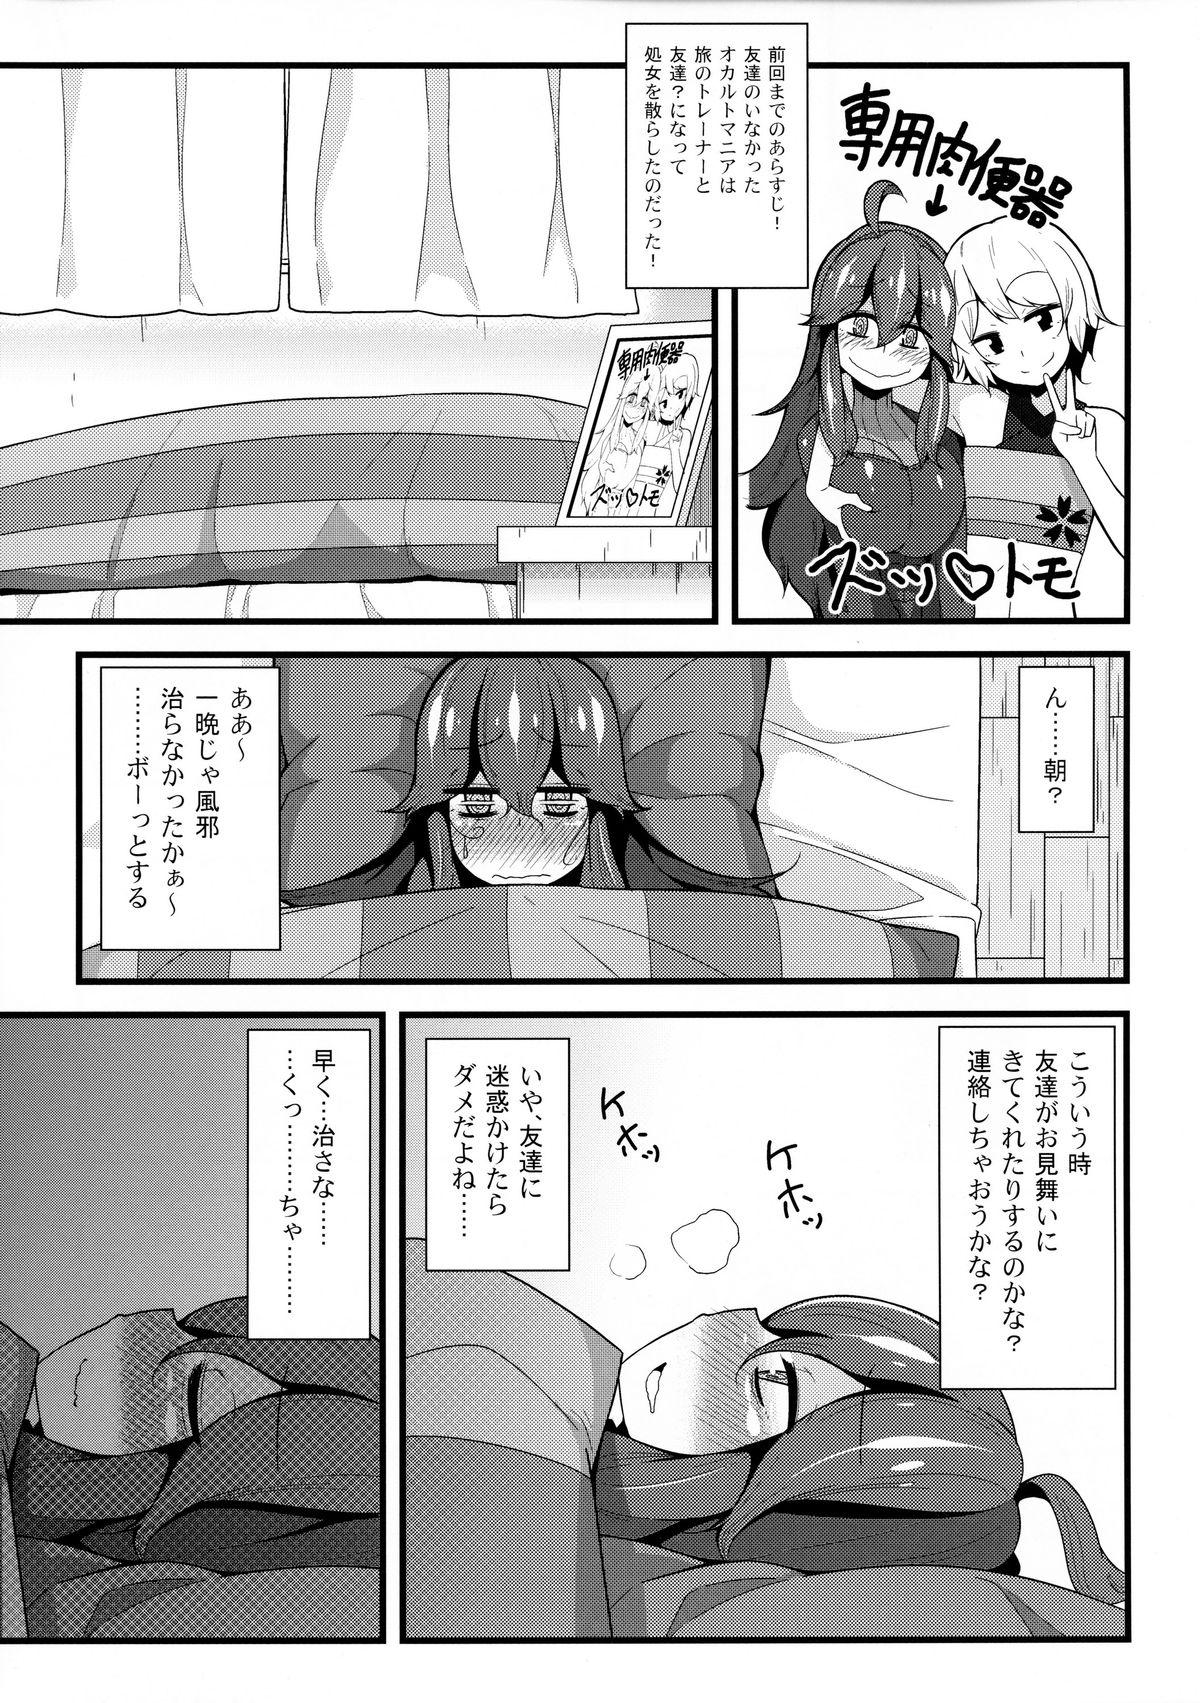 Anal Gape Tomodachi? Maniac 02 - Pokemon Lover - Page 4